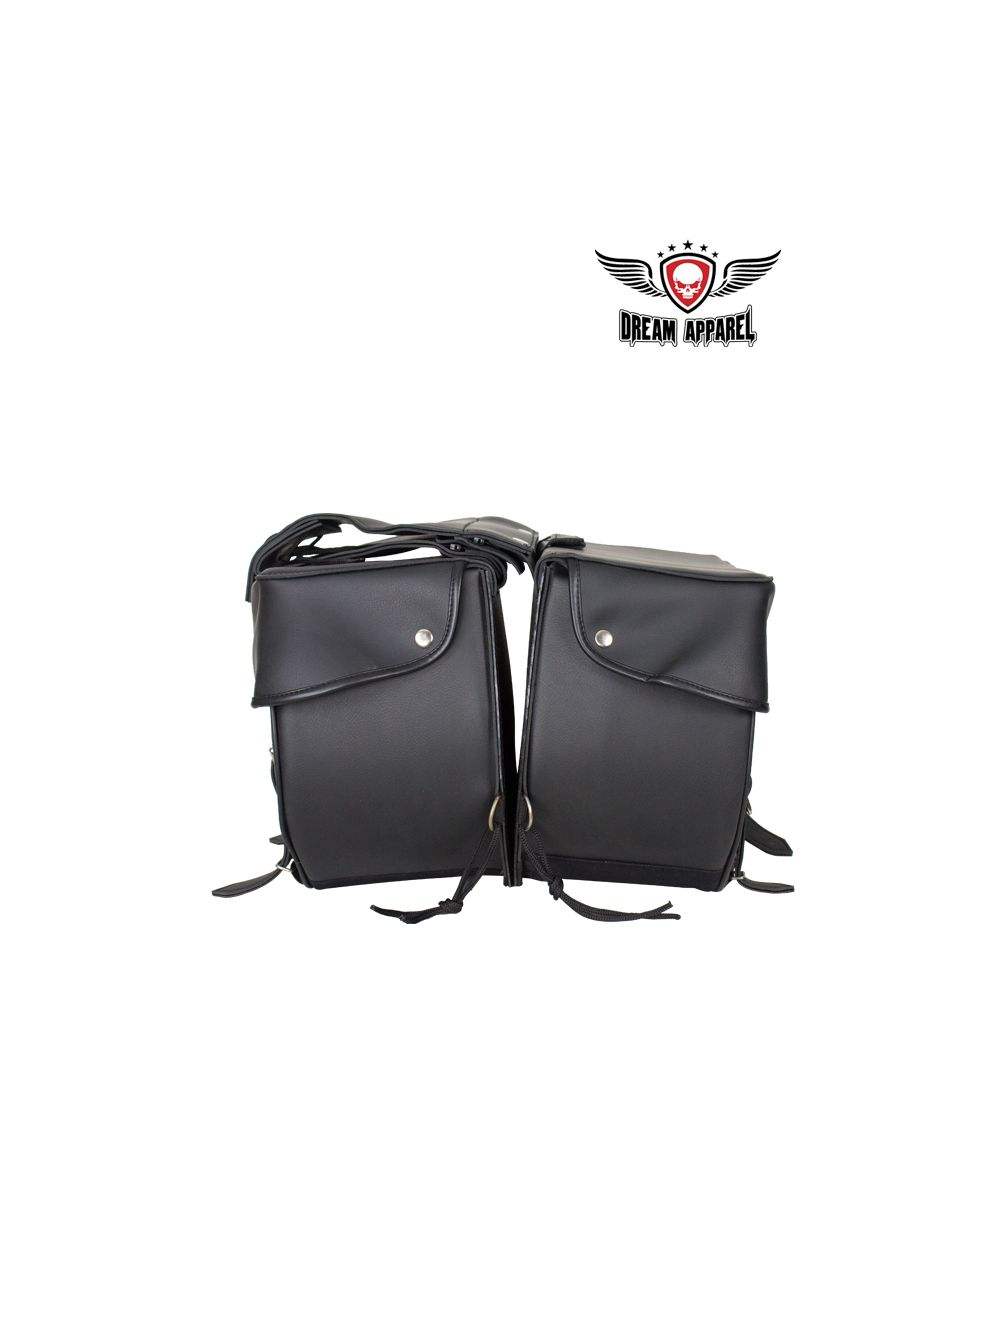 Dream Apparel 4003 Leather Saddle Bag - Black - Eagle Leather